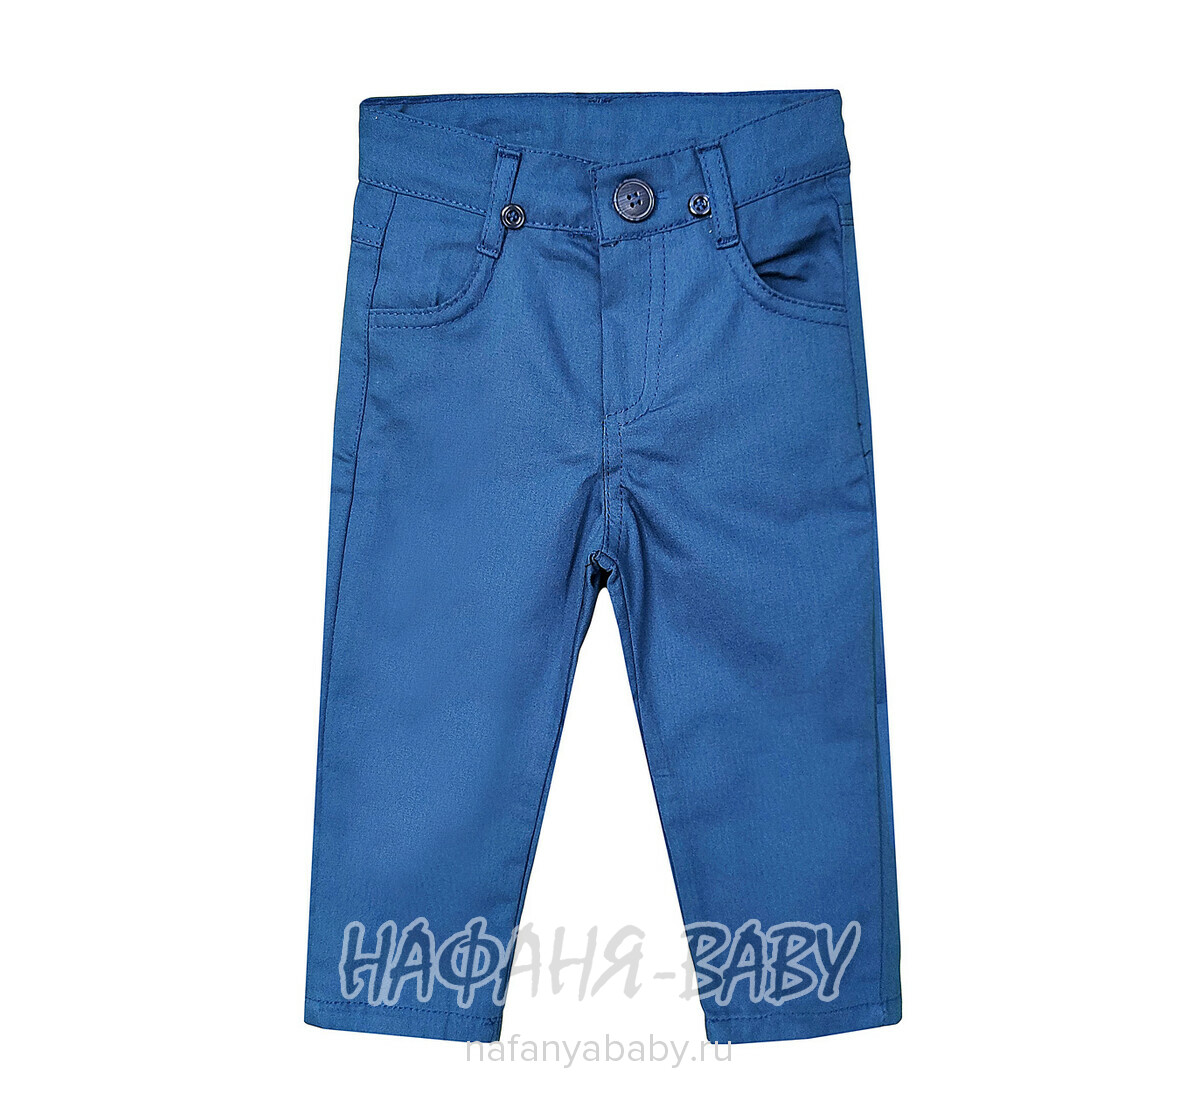 Детский костюм (рубашка + брюки) EFBEY арт. 3087, 1-4 года, цвет белый с синим, оптом Турция